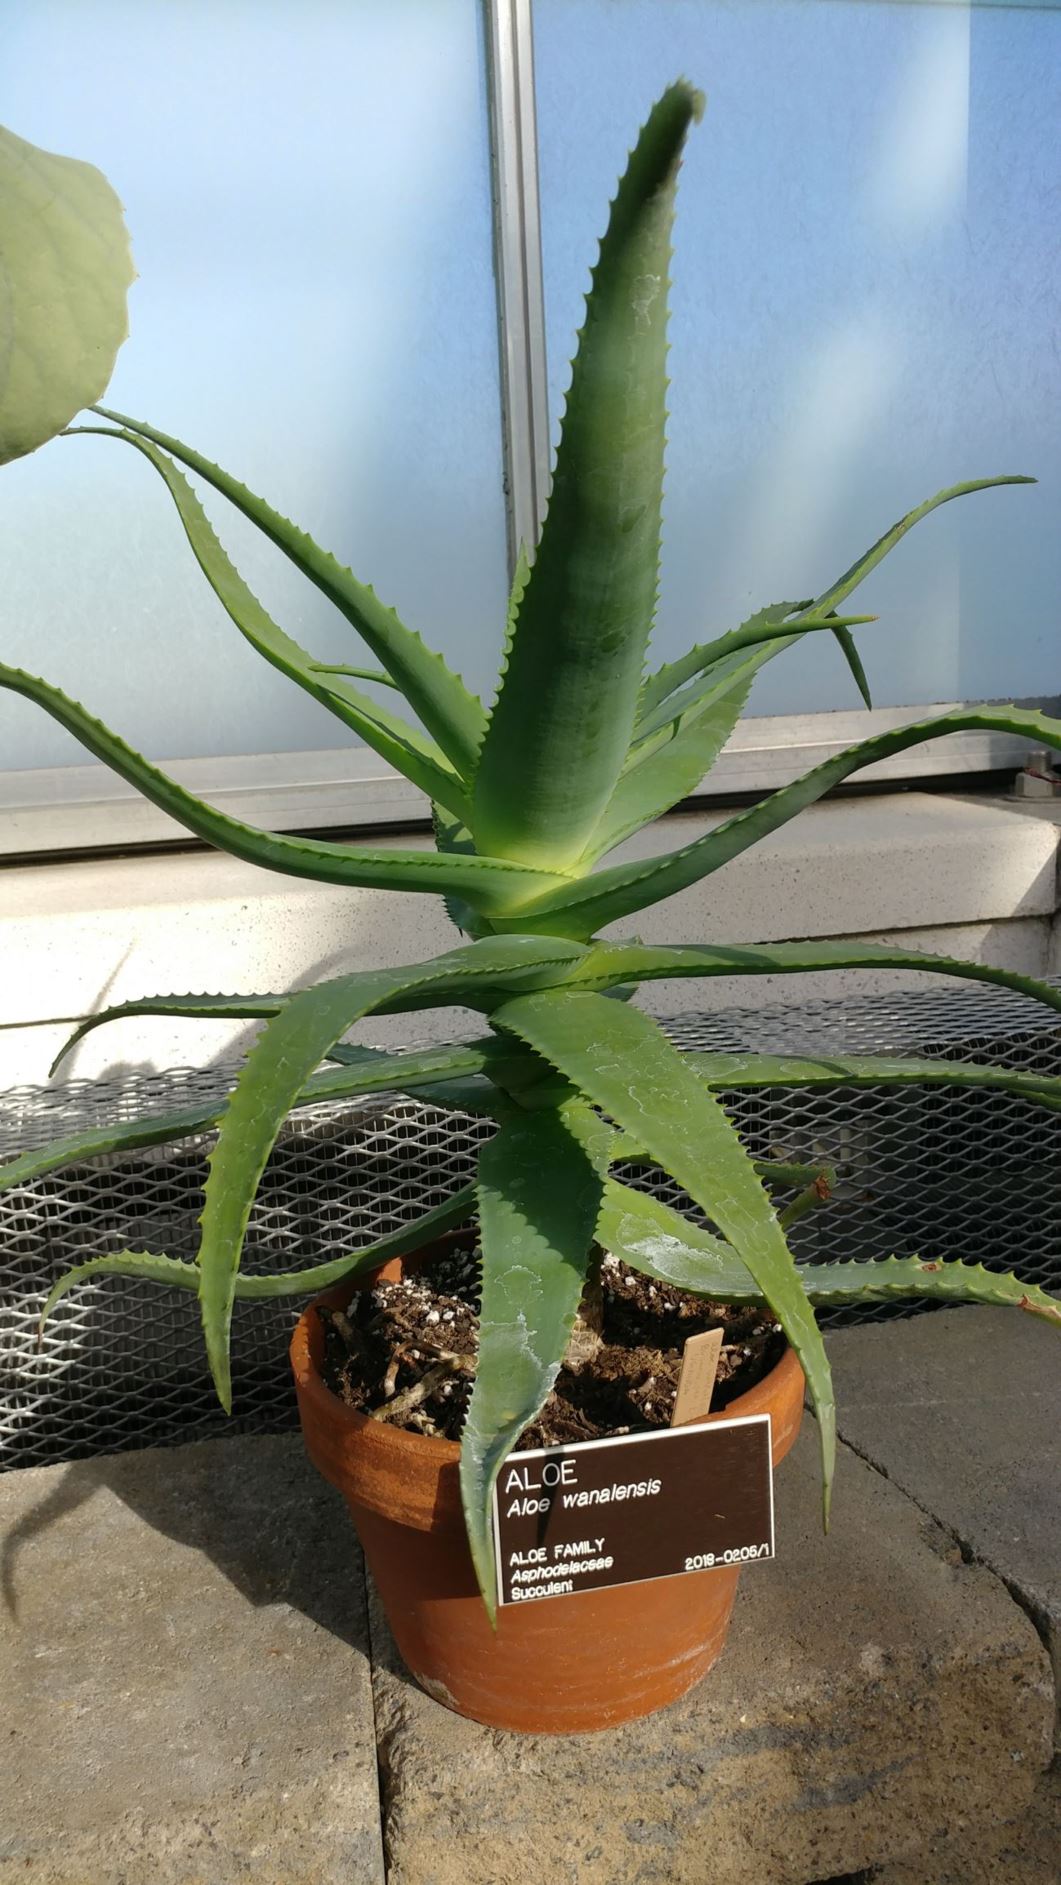 Aloe wanalensis - aloe